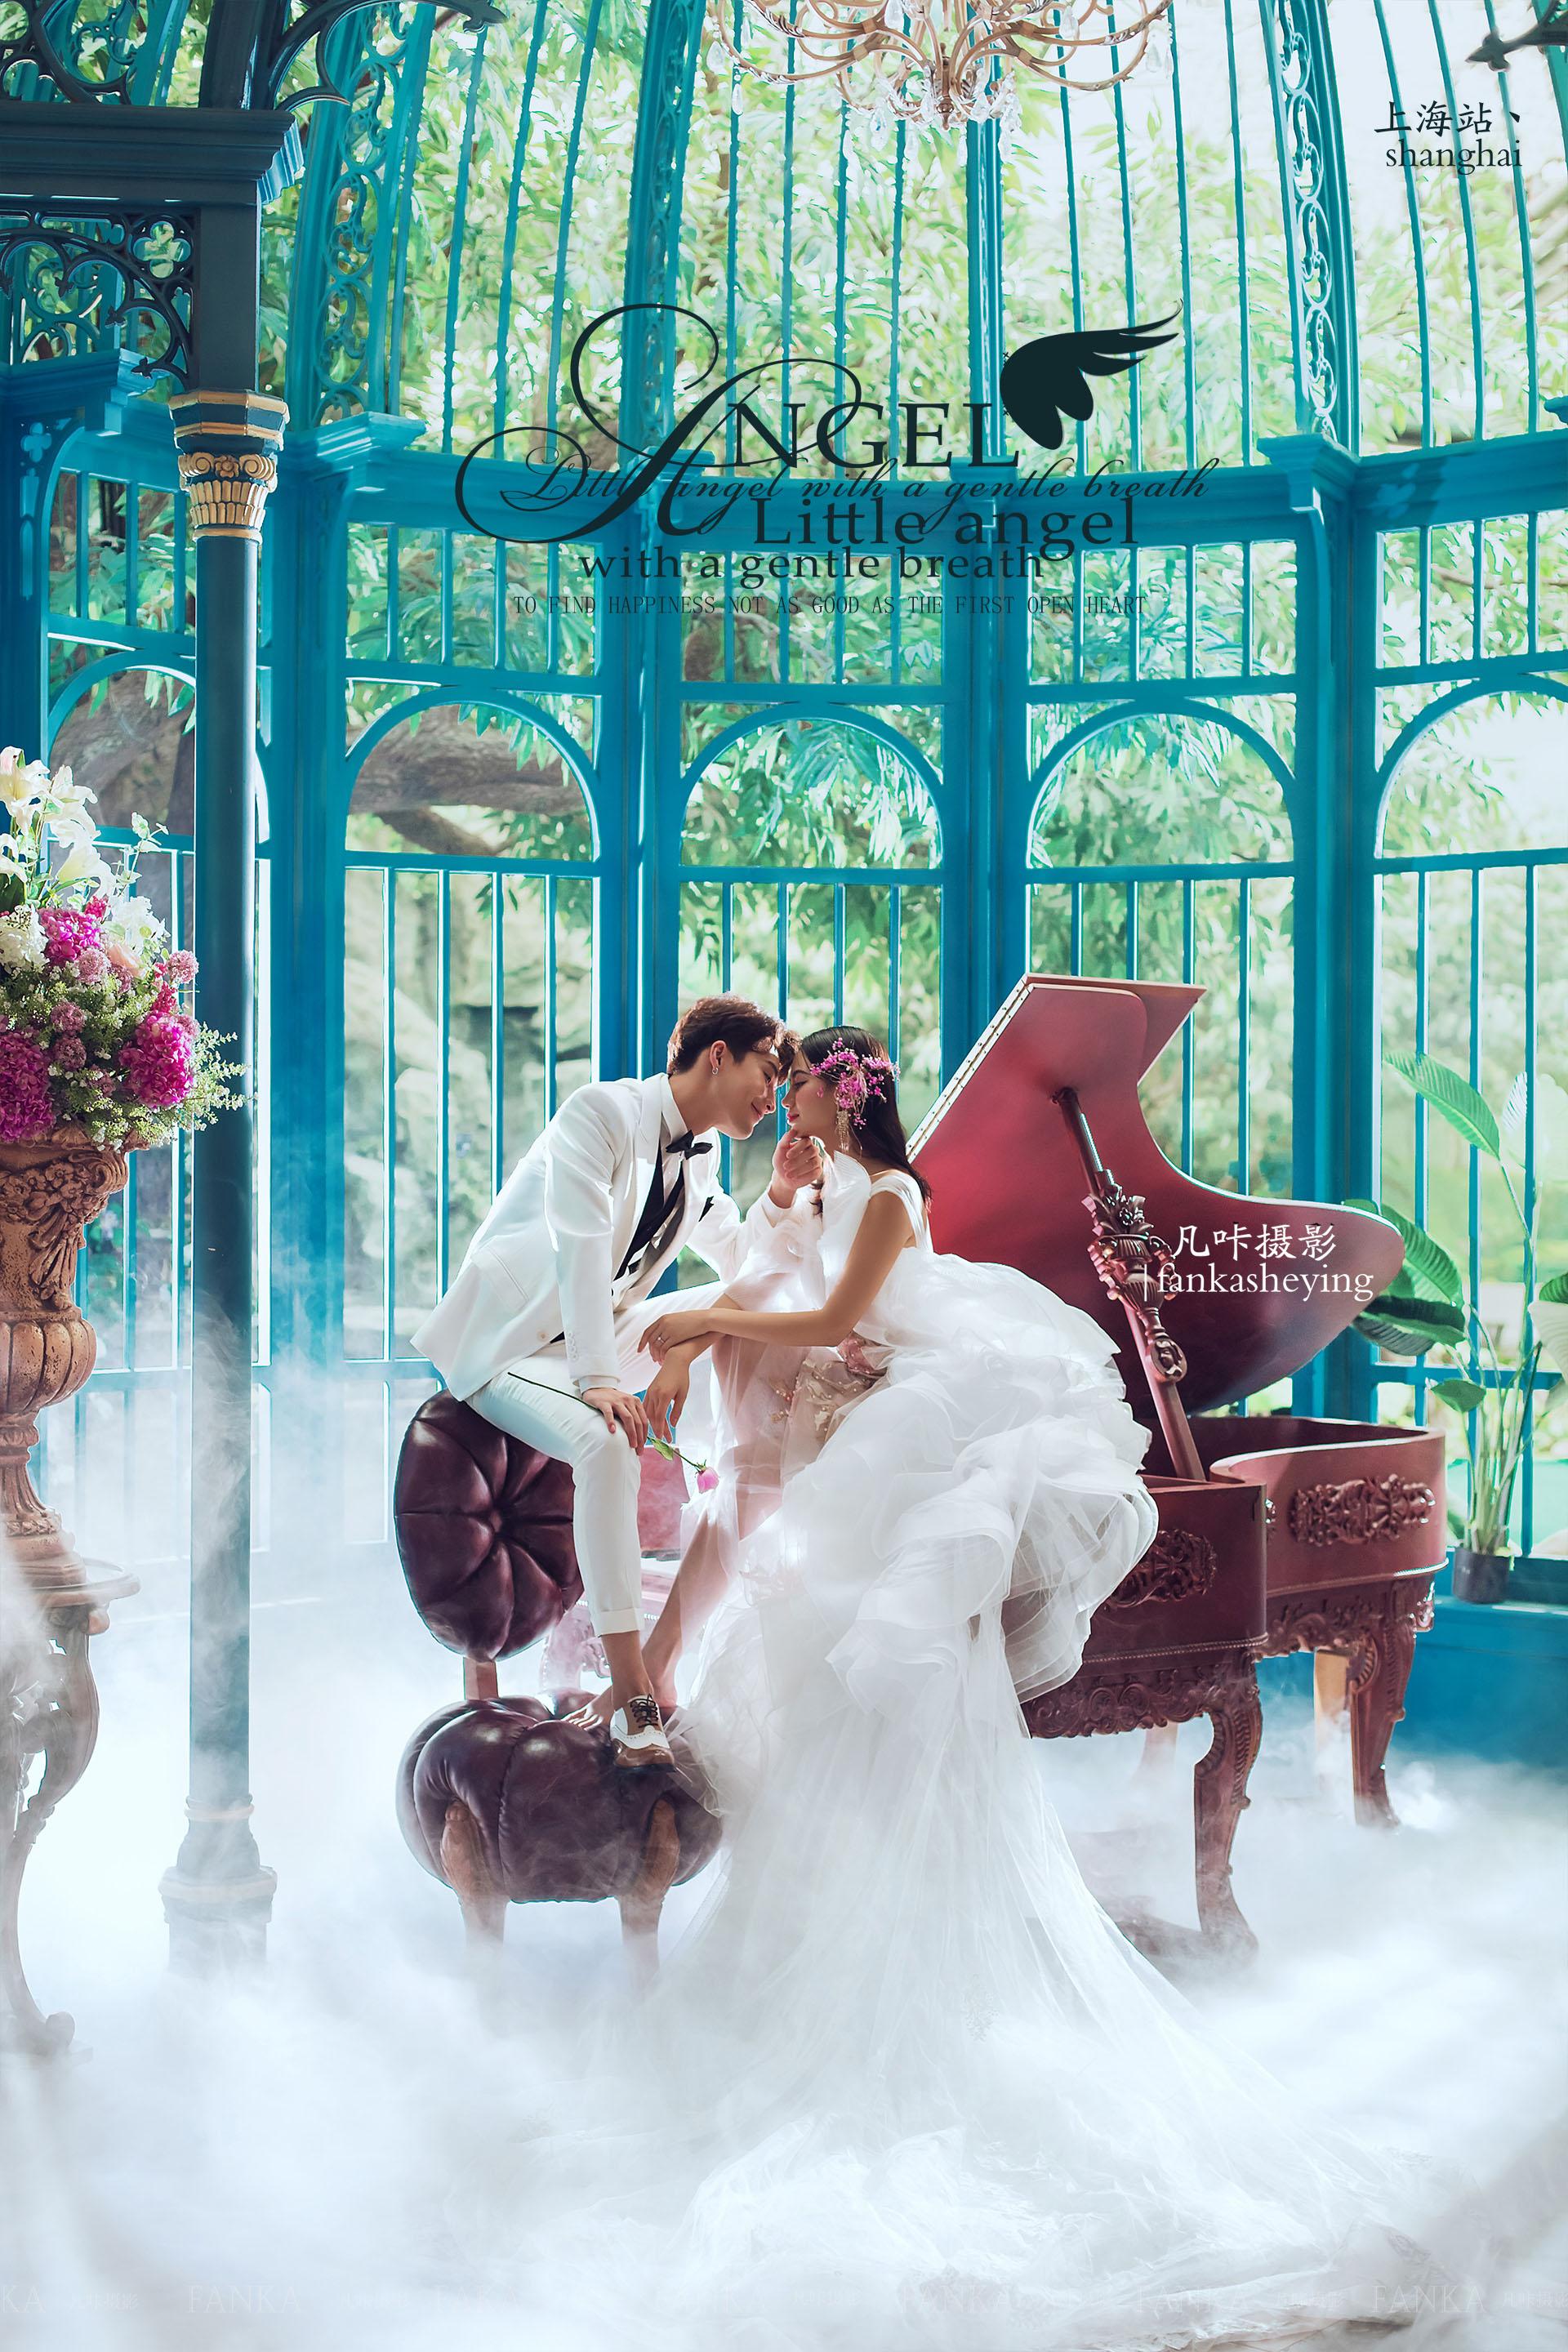 在时尚的三角钢琴旁,上演着唯美的爱情故事,加上些许雾气装饰,让画面